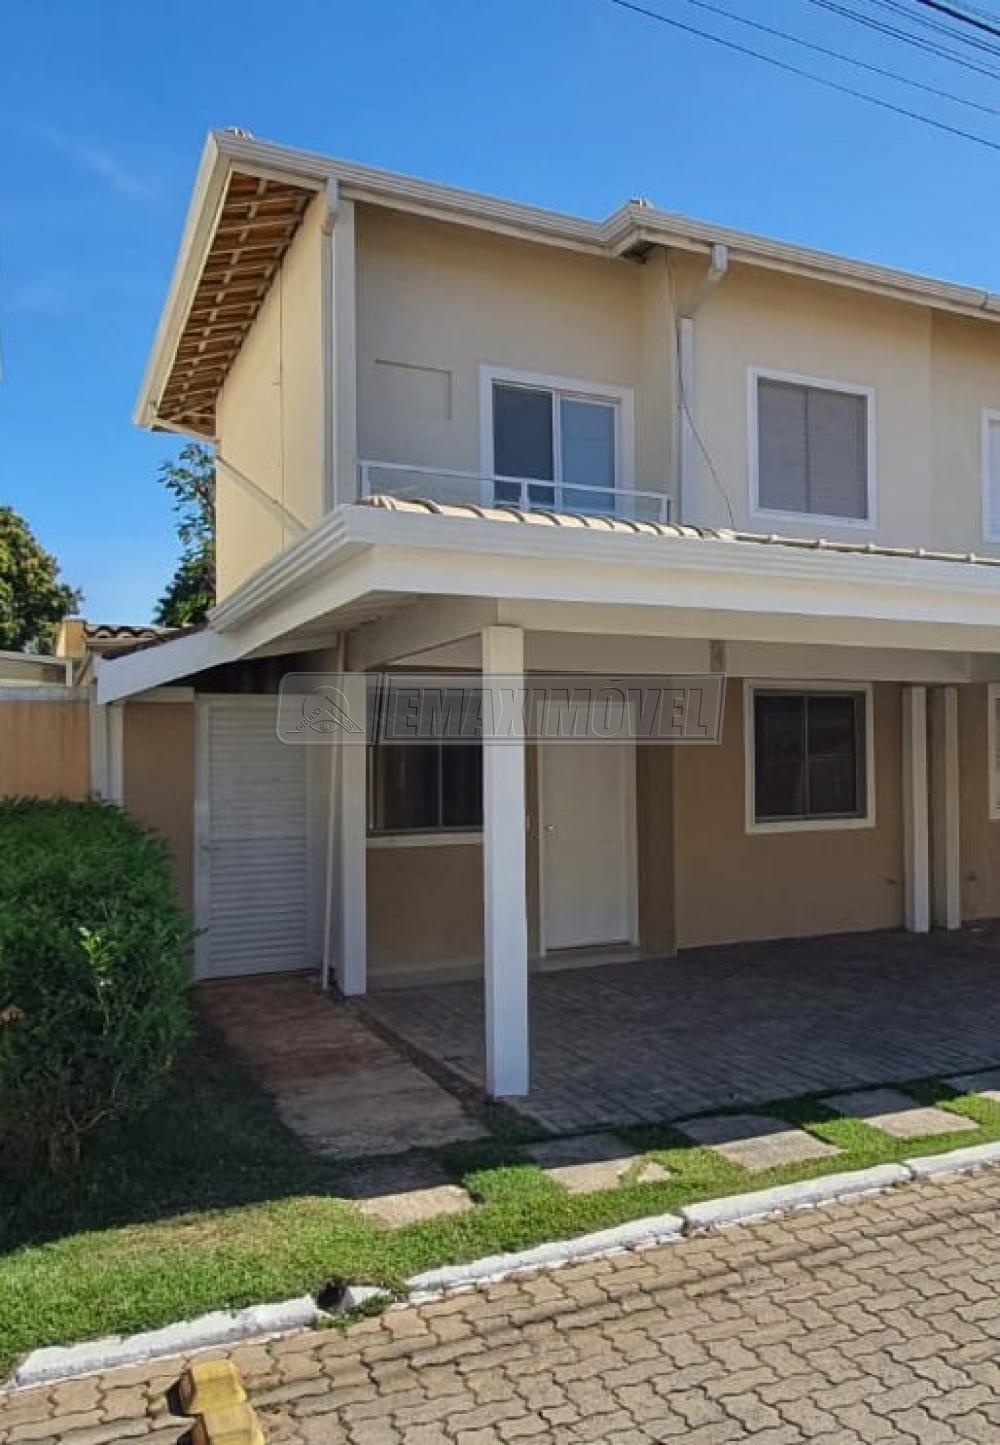 Comprar Casa / em Condomínios em Sorocaba R$ 585.000,00 - Foto 1